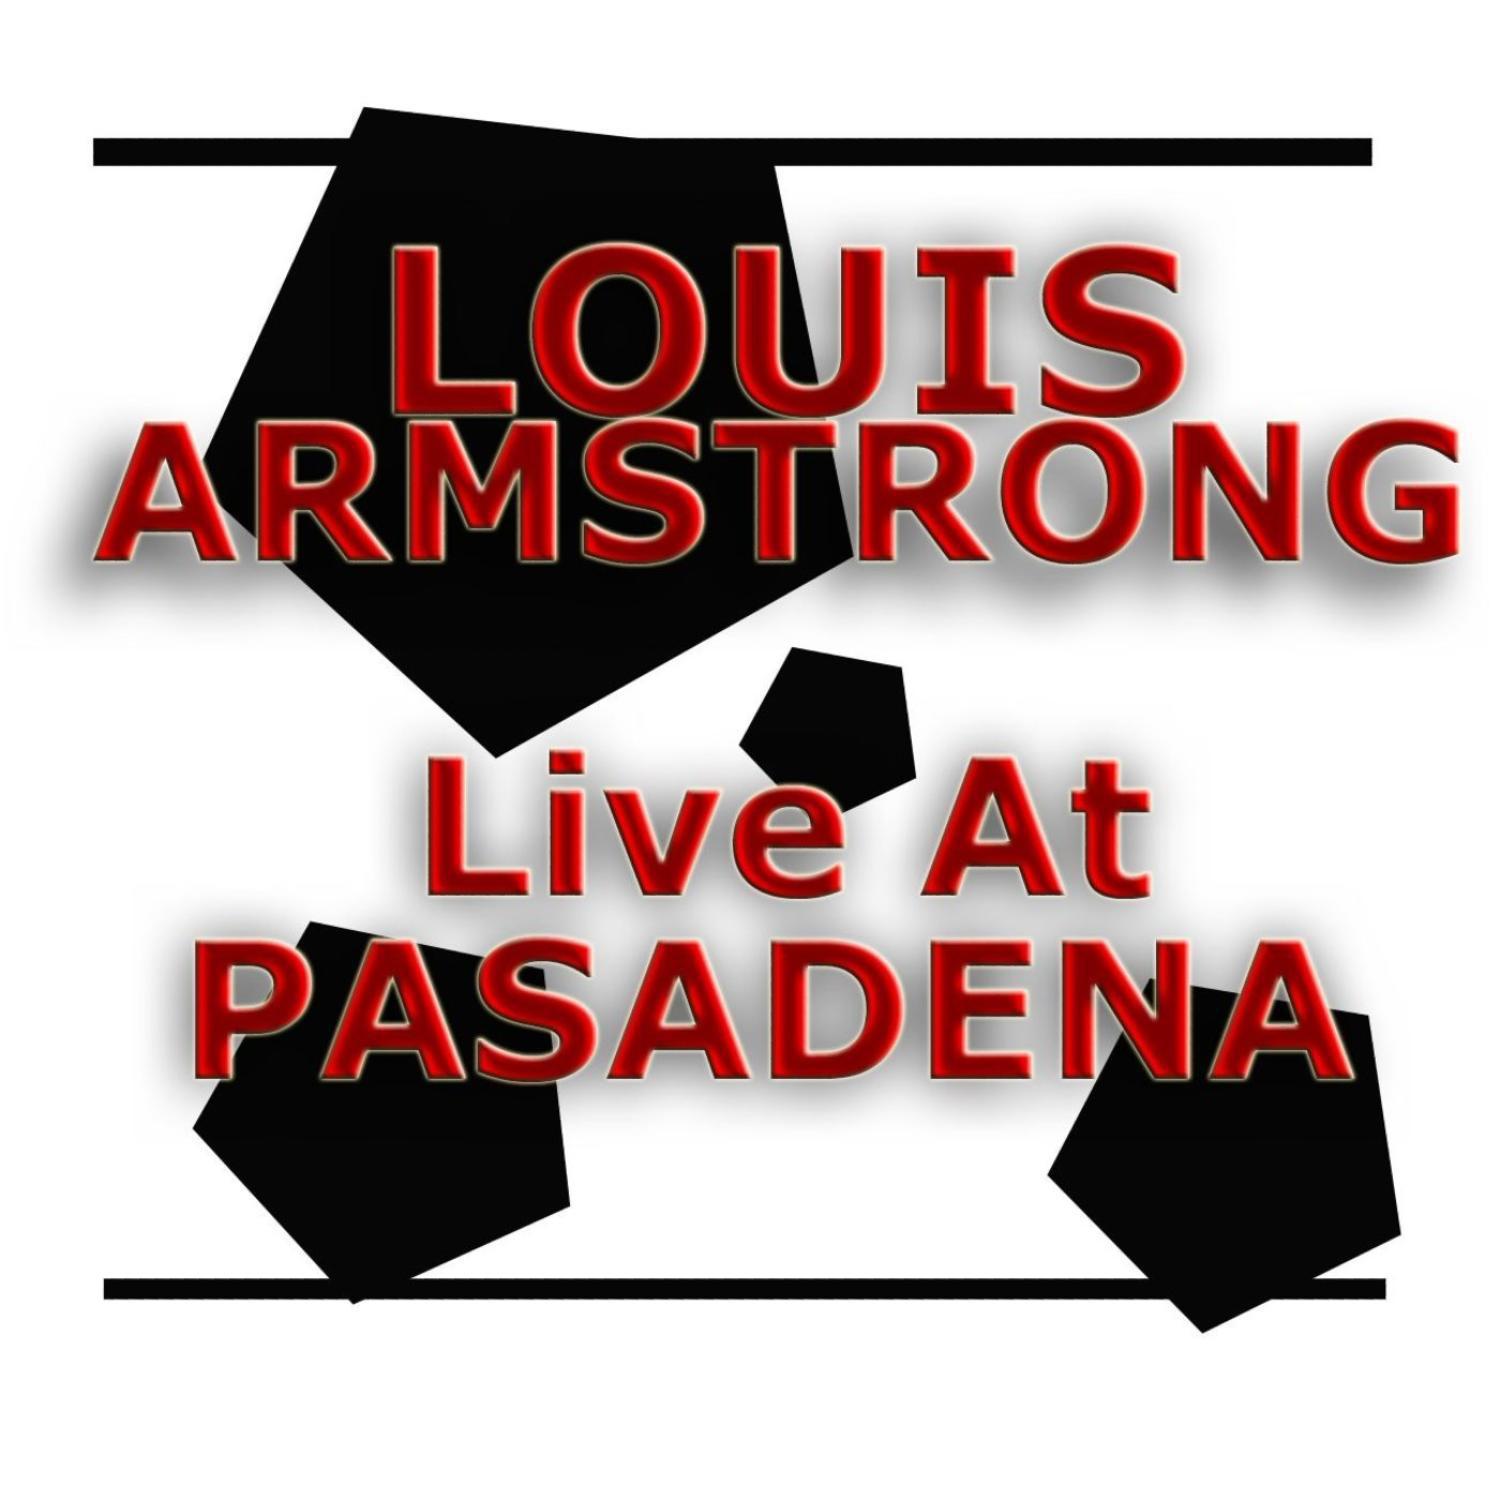 Live At Pasadena